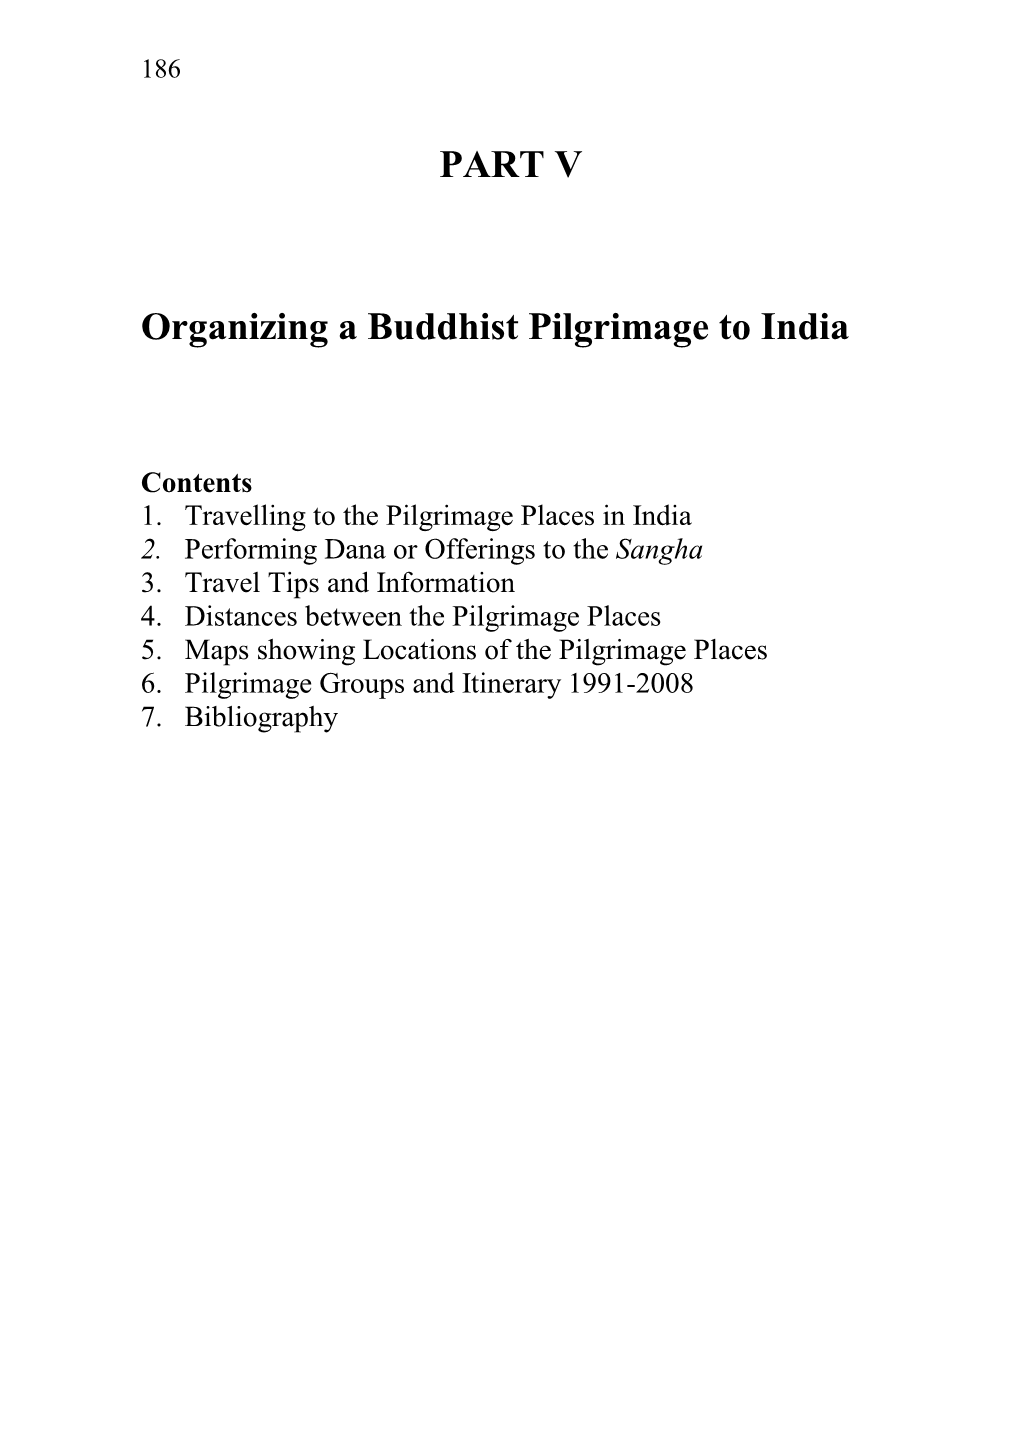 PART V Organizing a Buddhist Pilgrimage to India